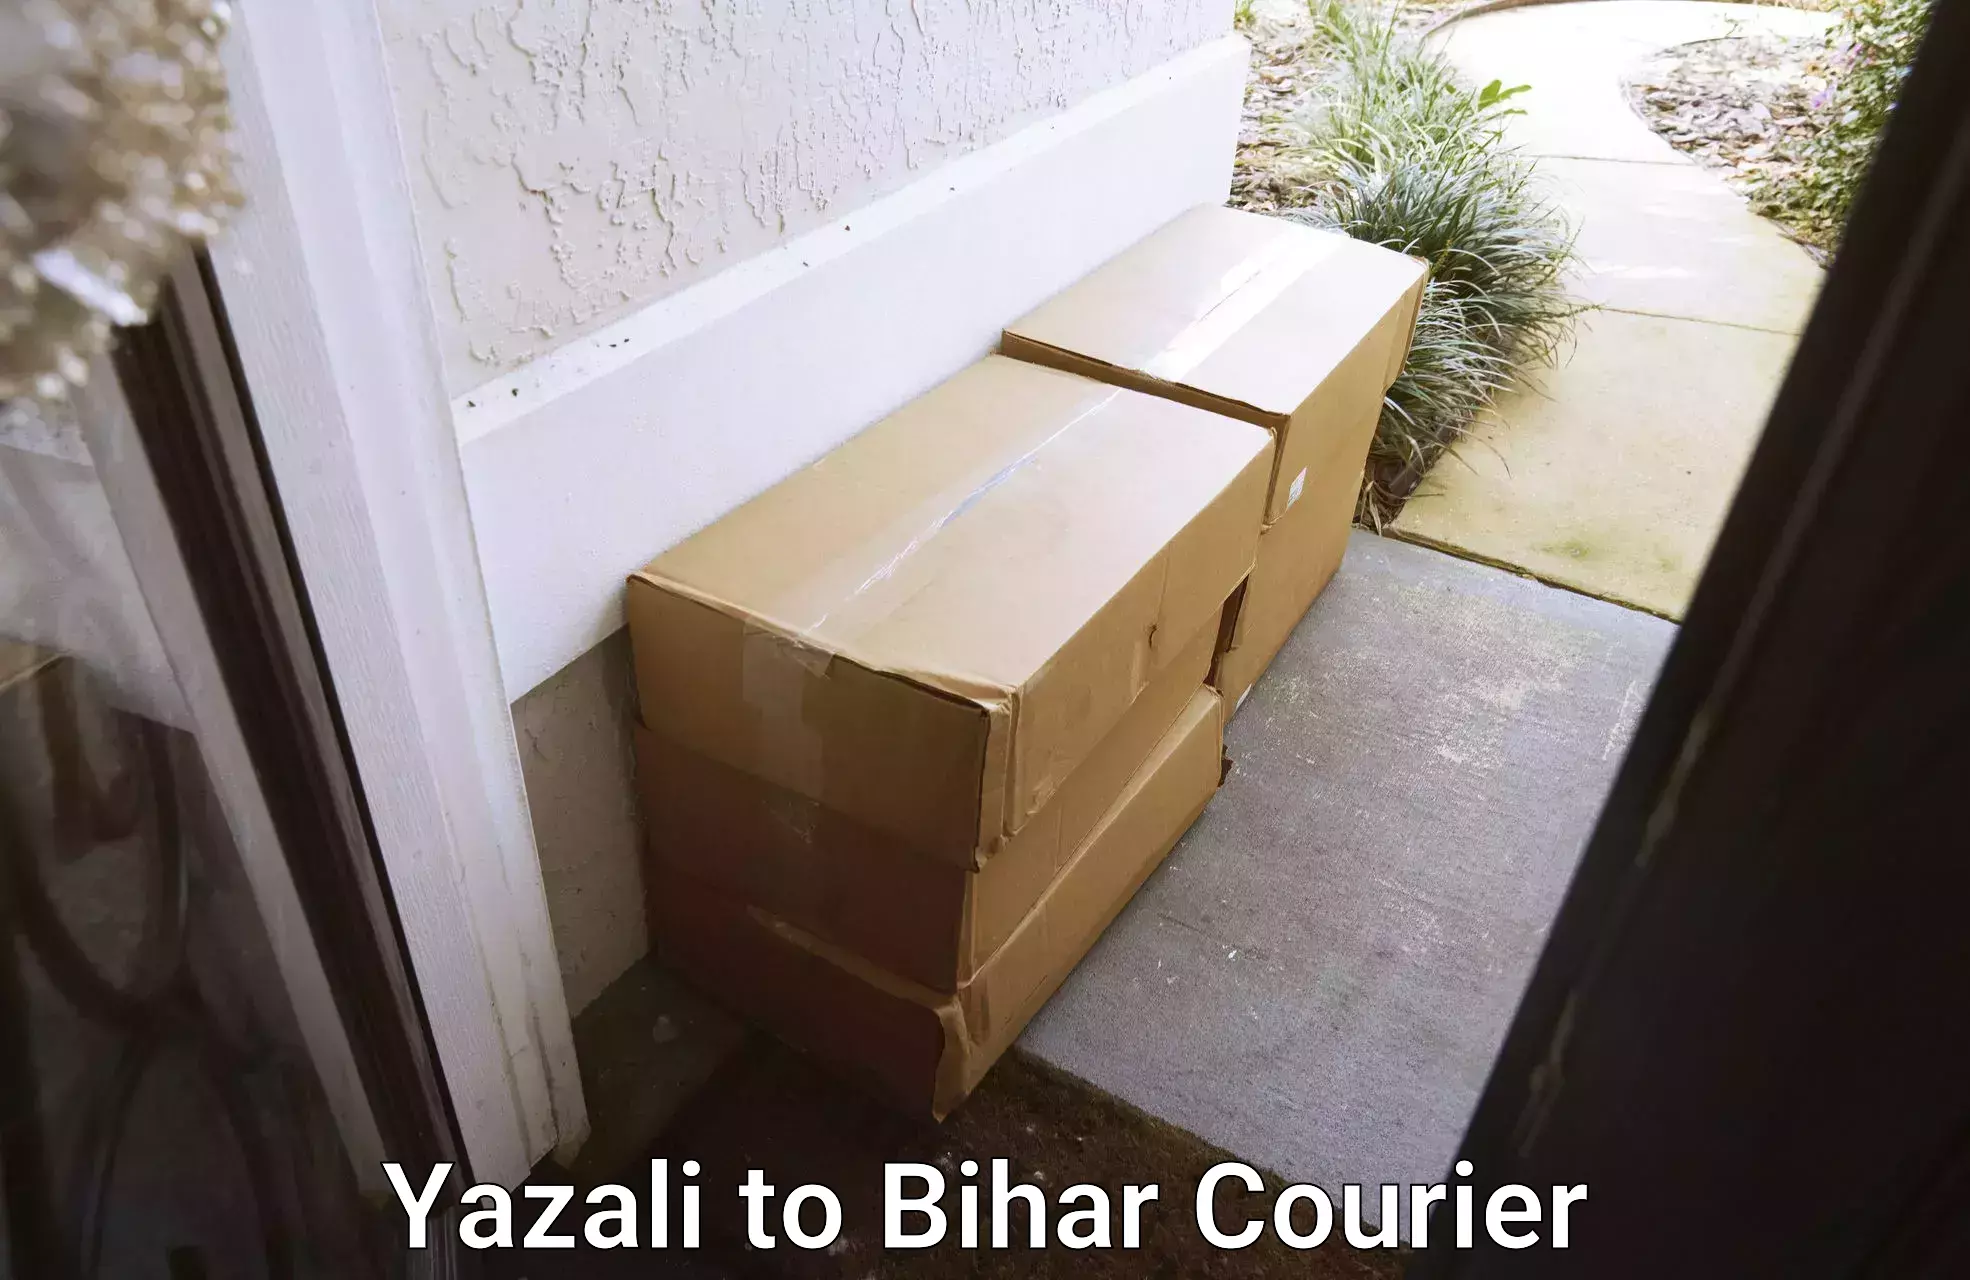 Cross-border shipping Yazali to Bihar